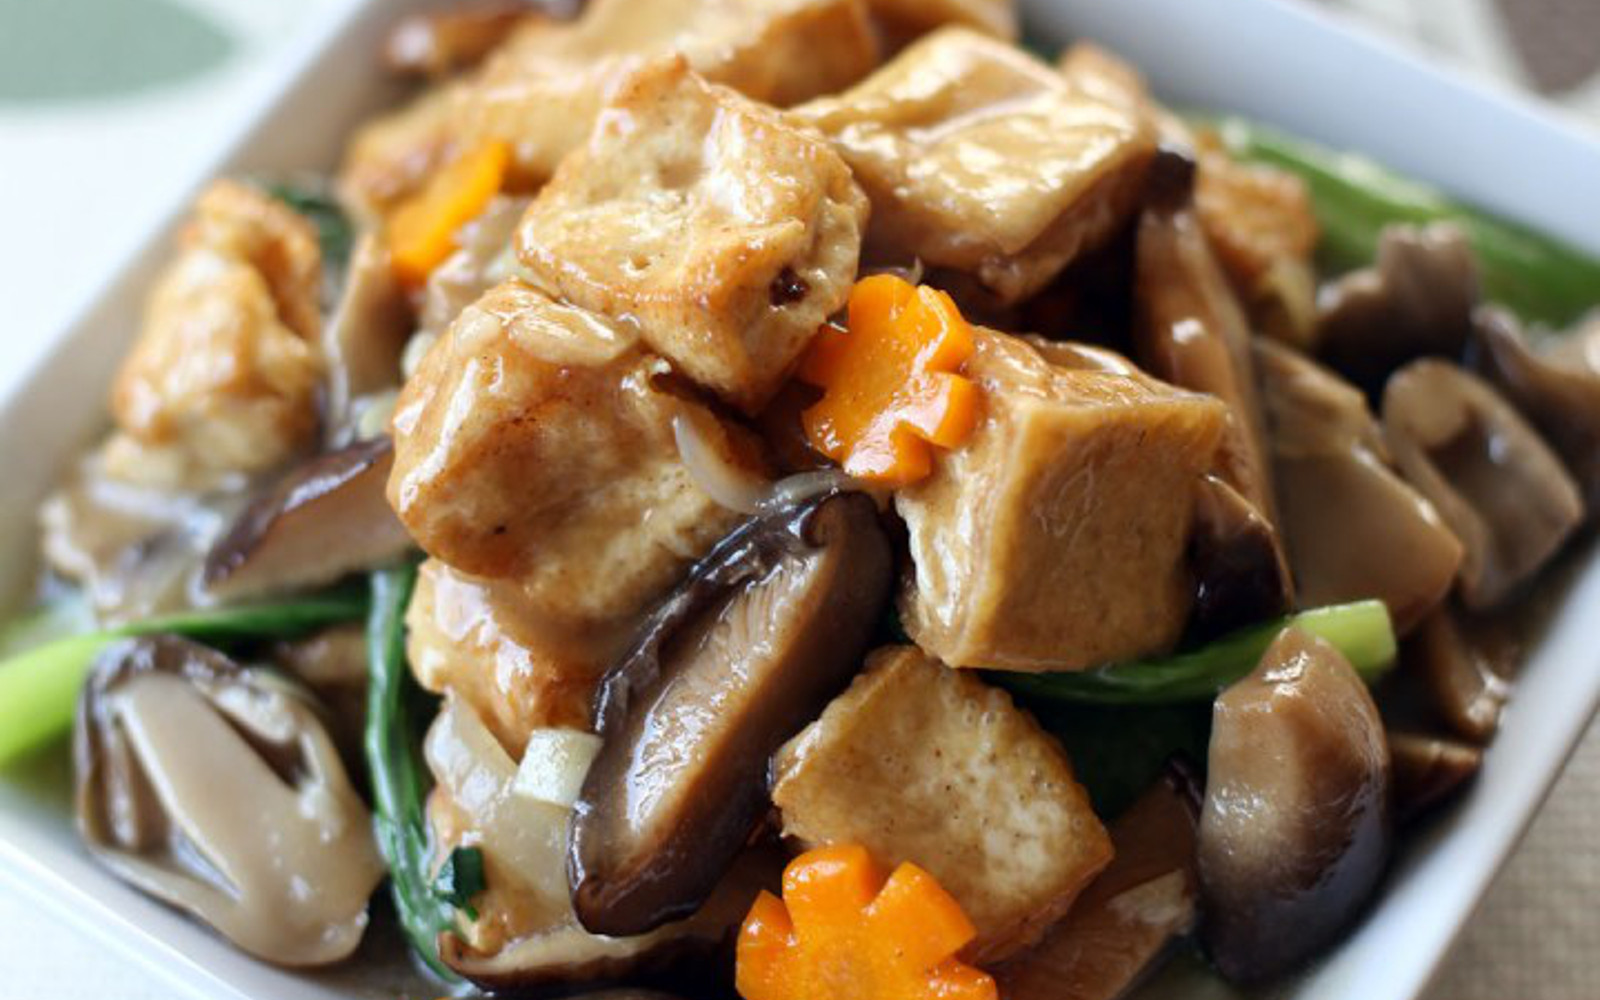 Chinese Vegetarian Recipes With Tofu
 Chinese Braised Tofu and Veggie Stir Fry [Vegan Gluten